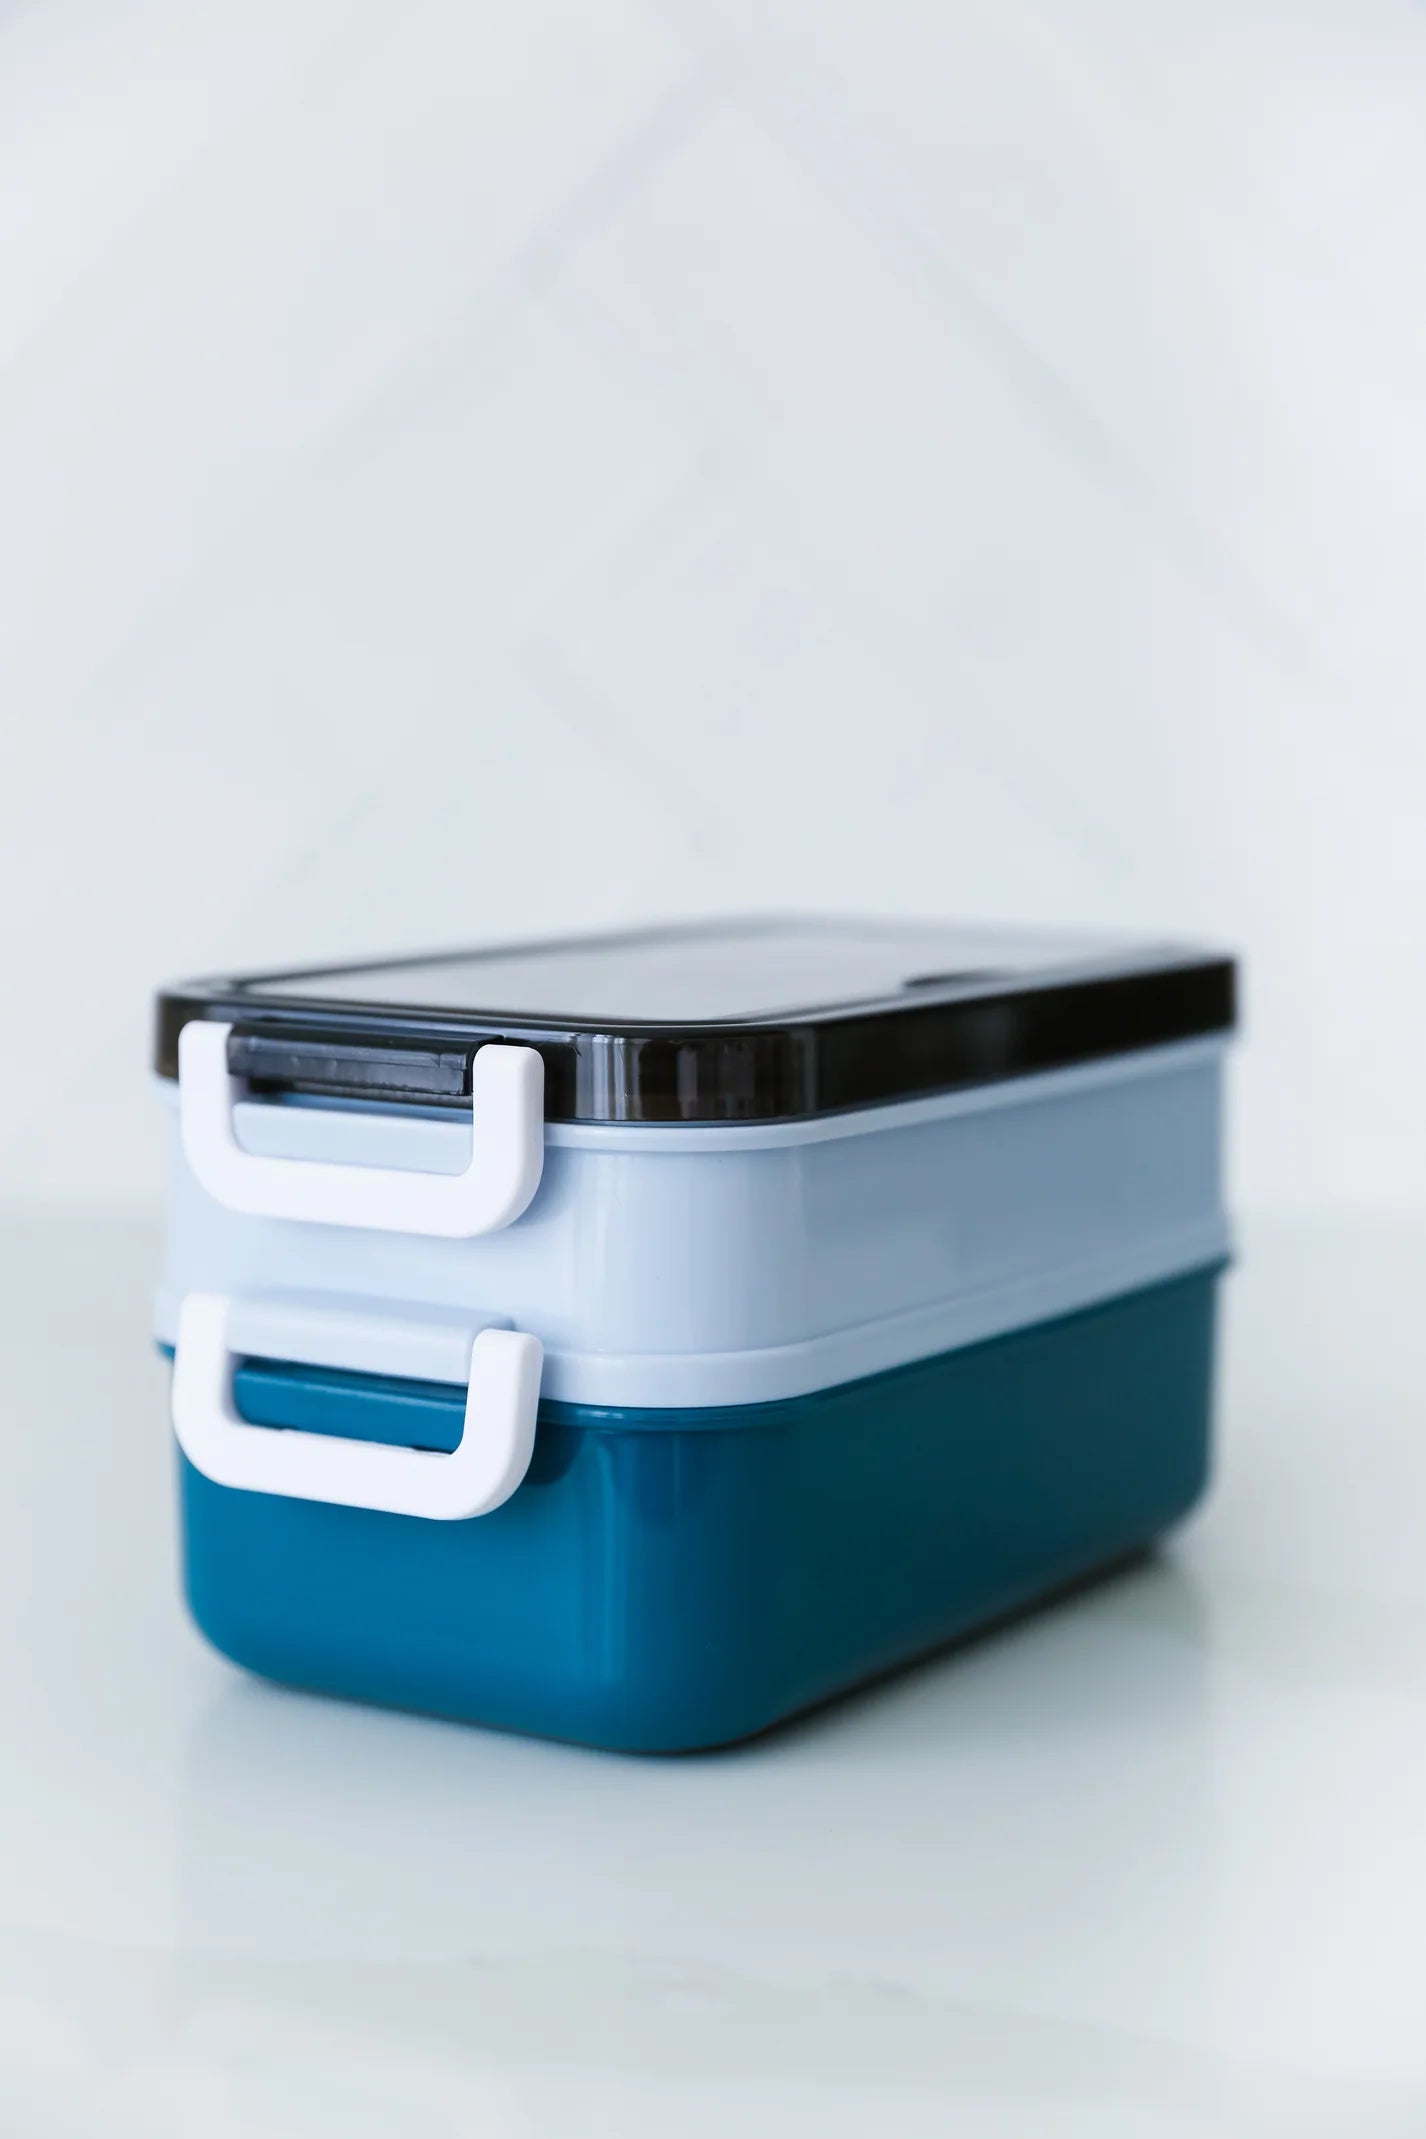 Blue Stackable Bento Box